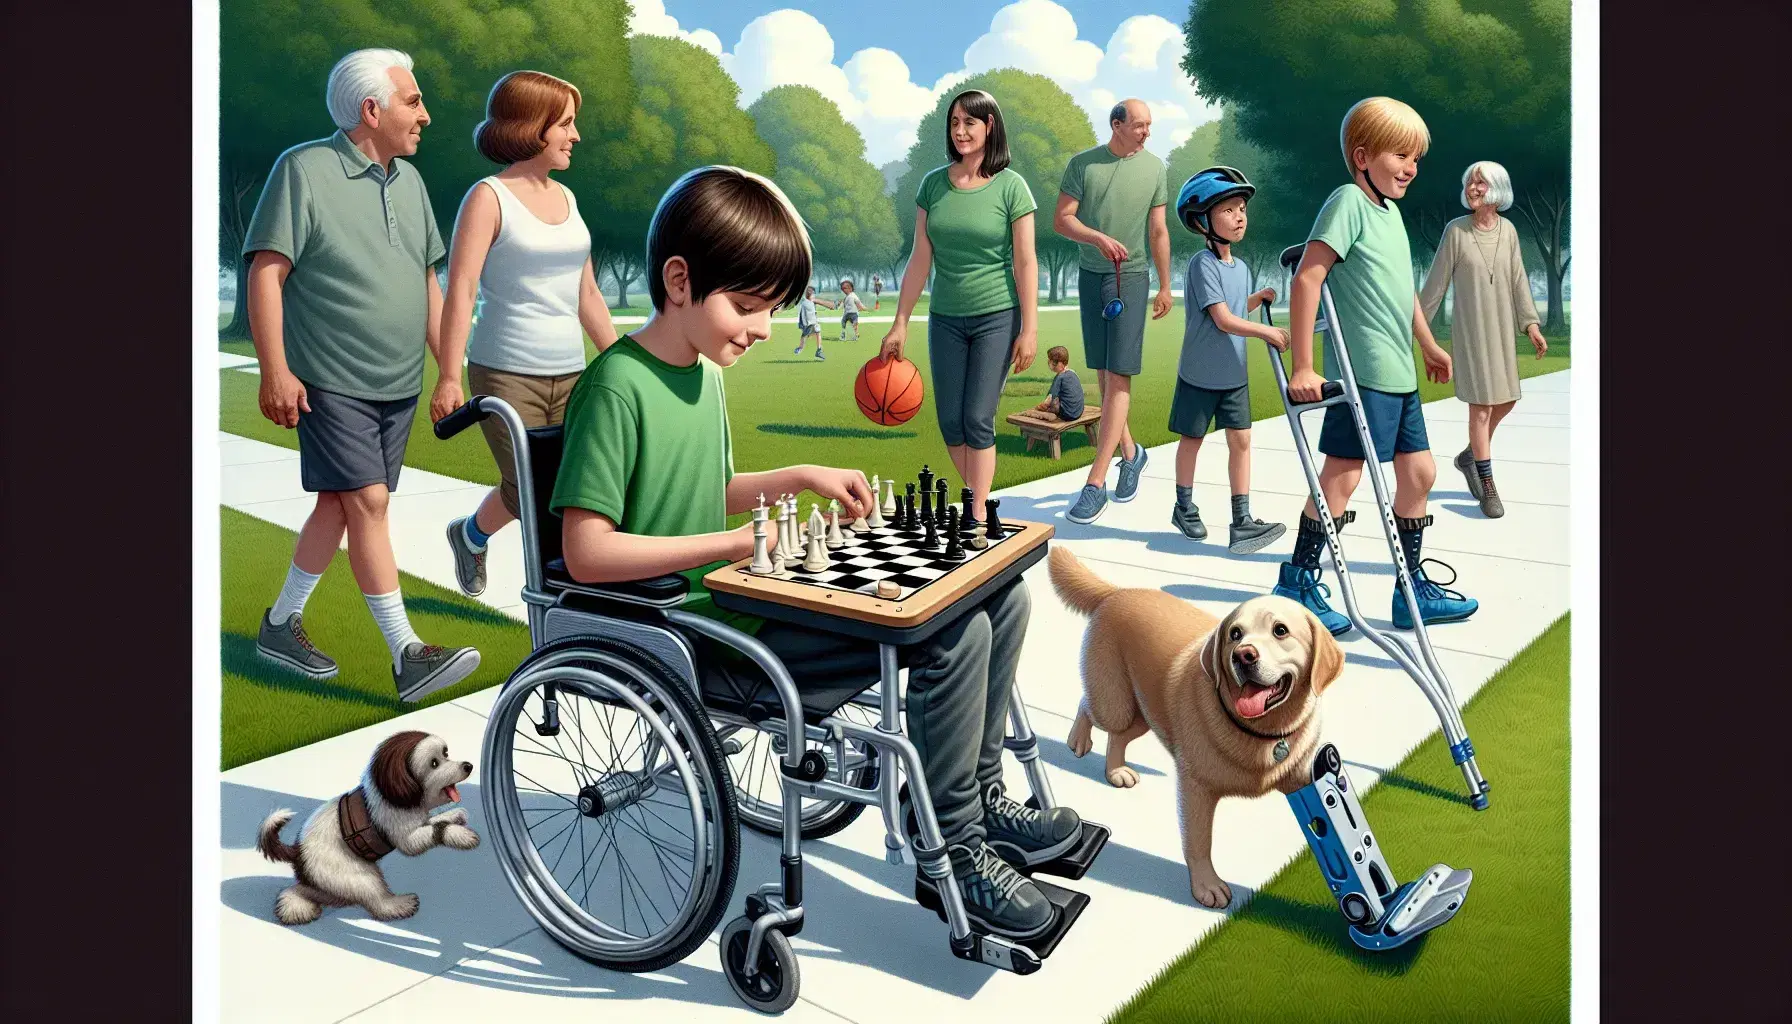 Ragazzo in sedia a rotelle gioca a scacchi in parco, donna con stampelle e bambino con casco vicino a cane con frisbee.